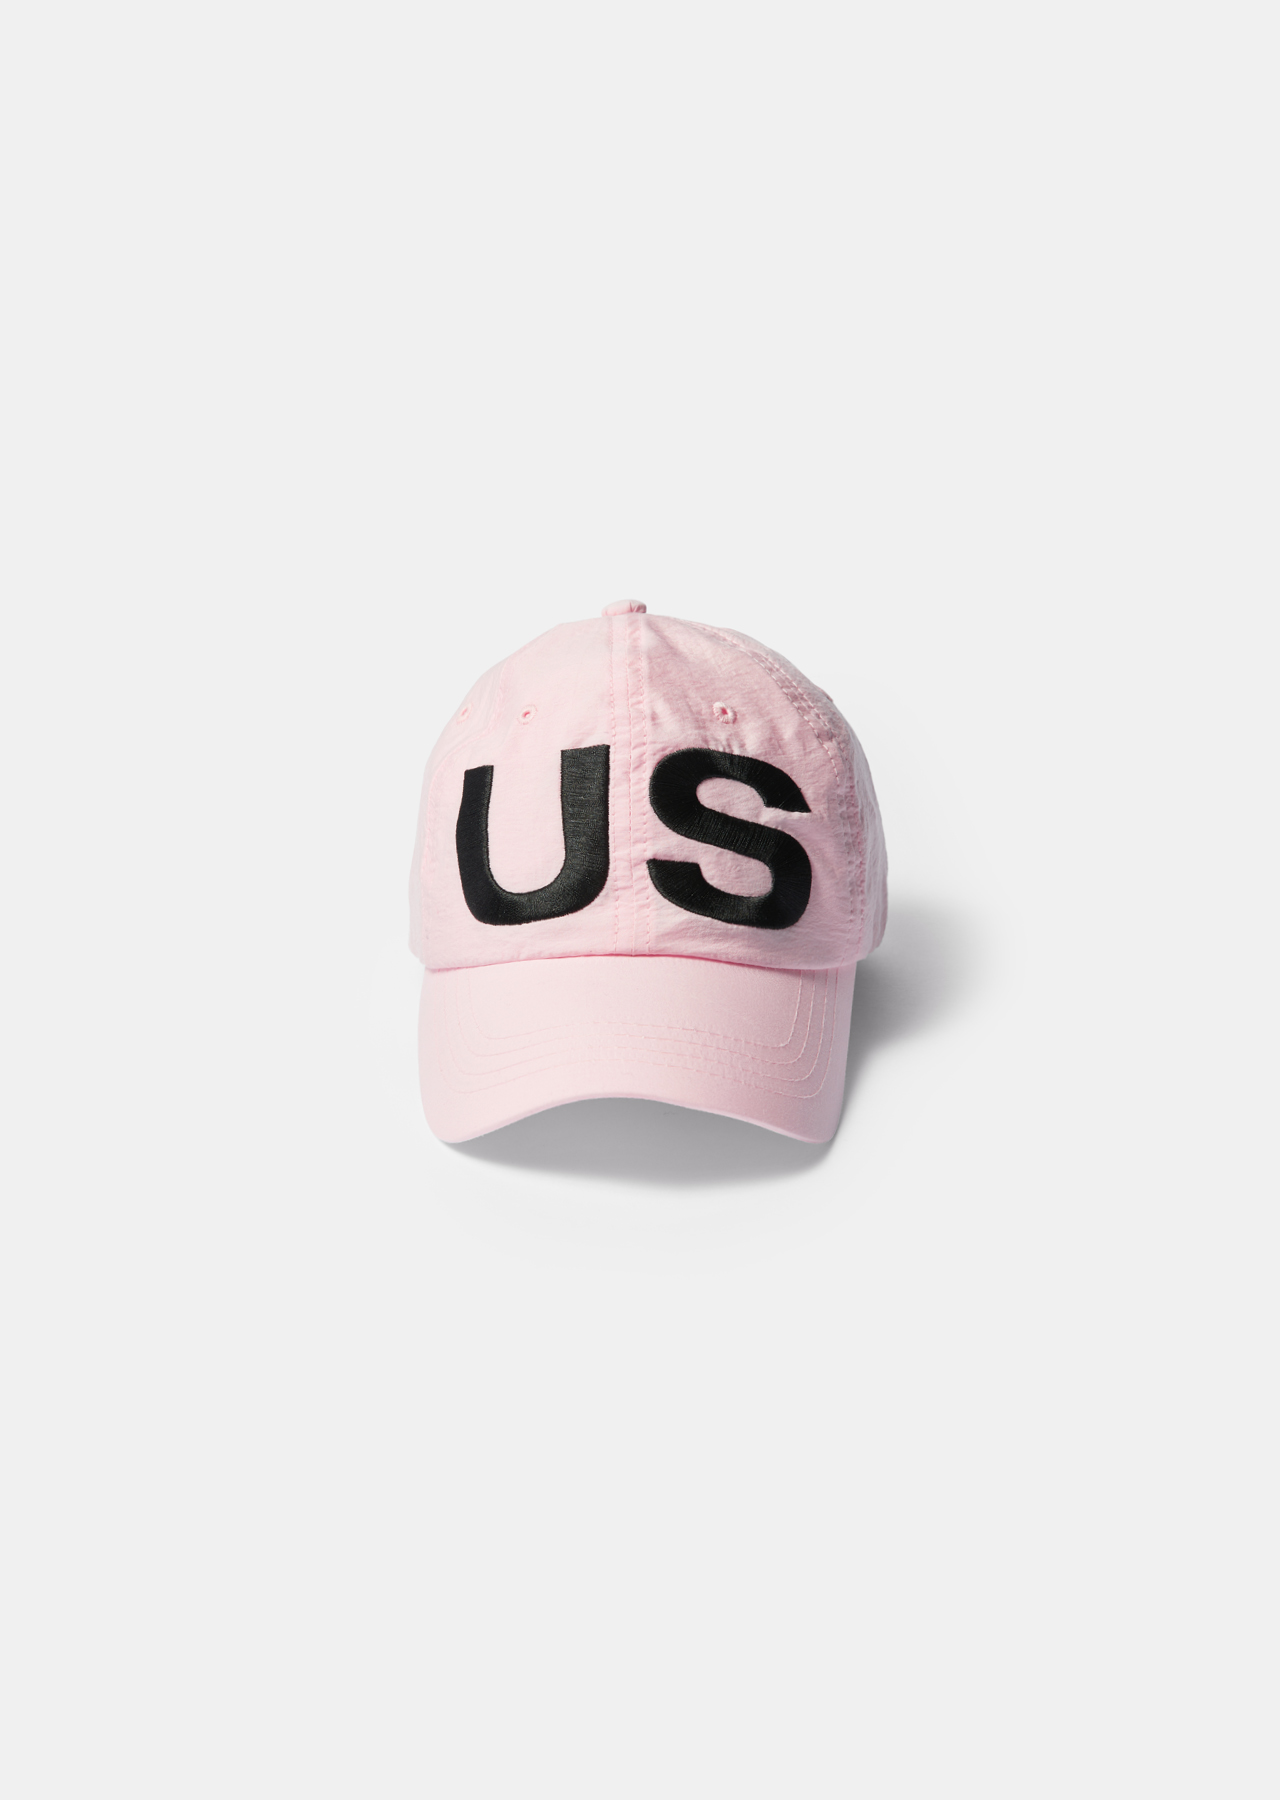 US CAP PINK